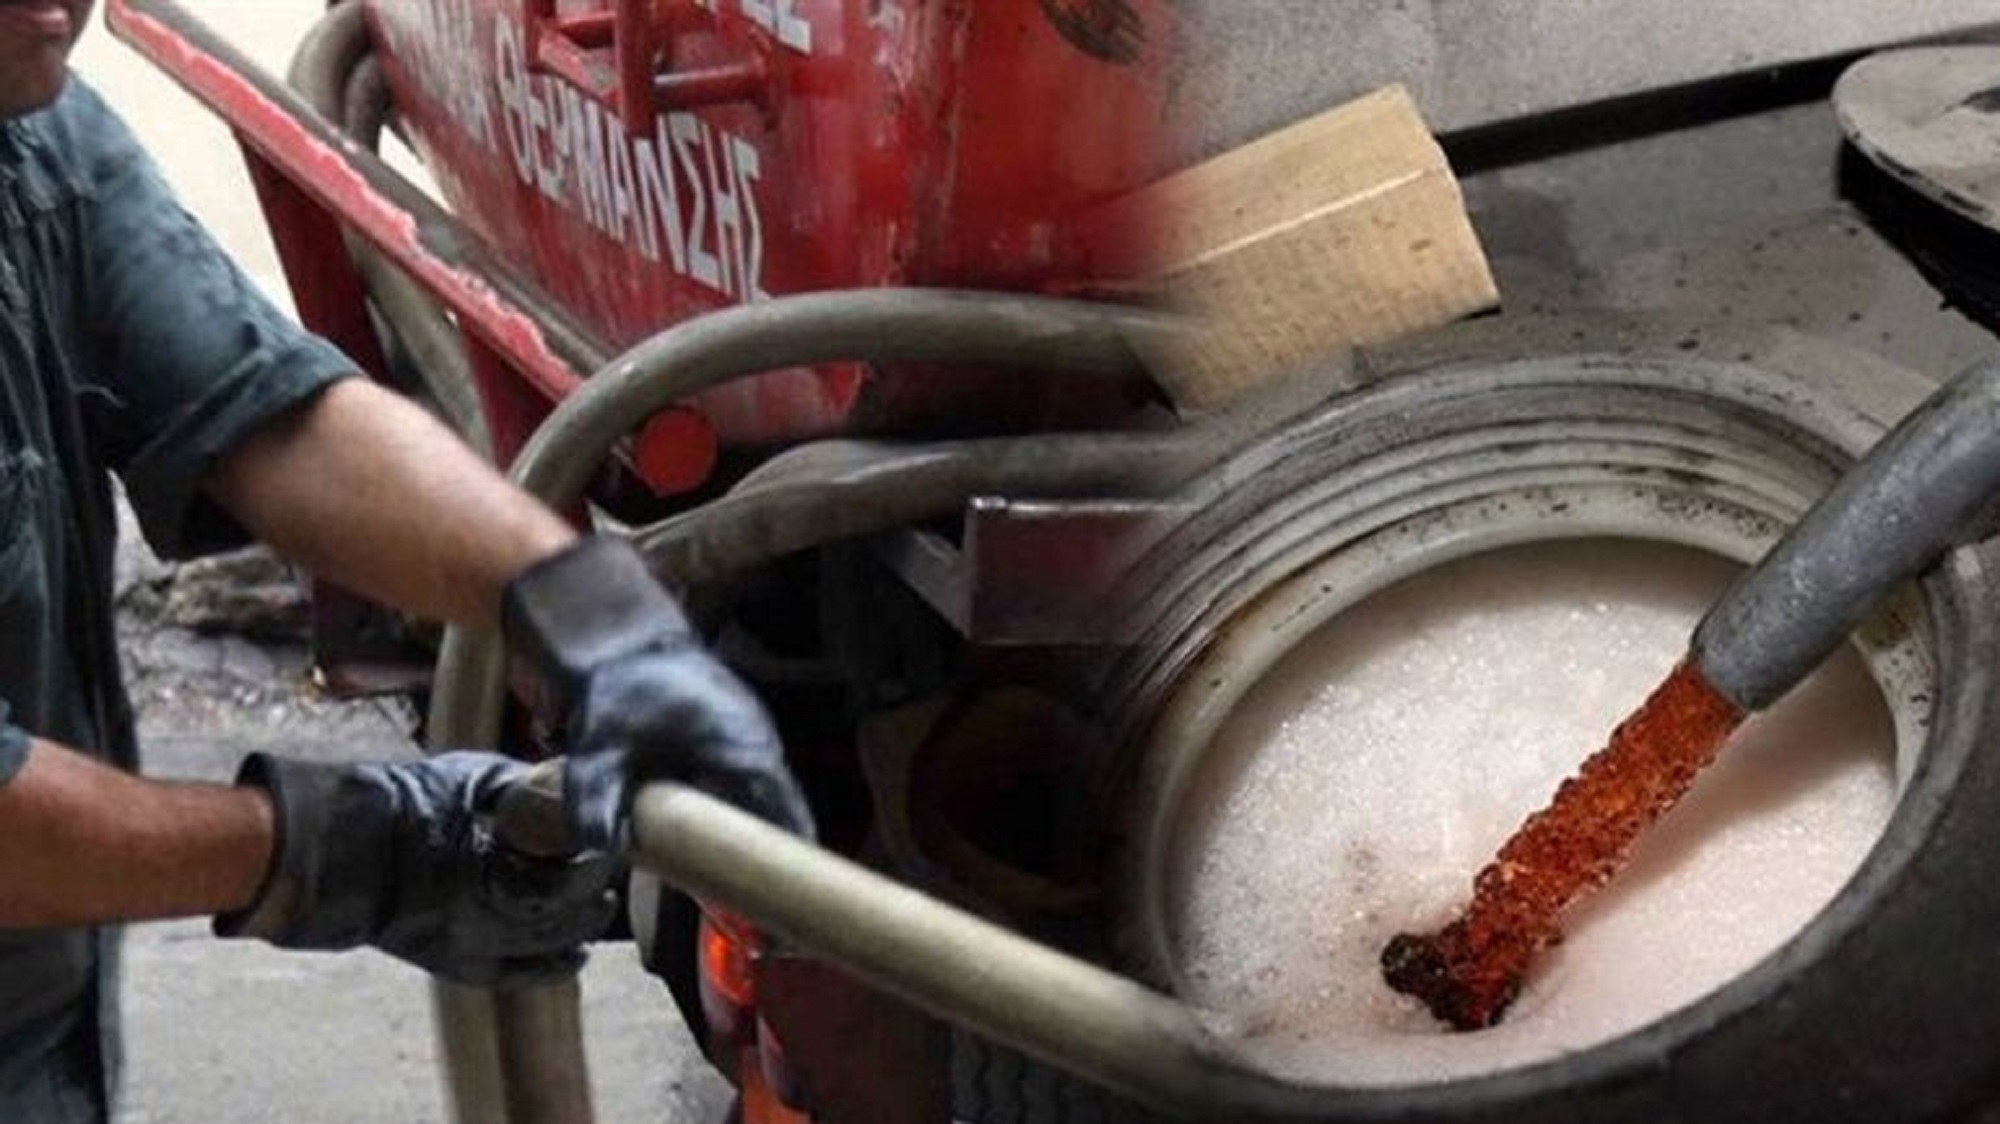 Βενζινοπώλες: Ζητούν να συνεχιστεί η επιδότηση του πετρελαίου θέρμανσης στην αντλία (video)